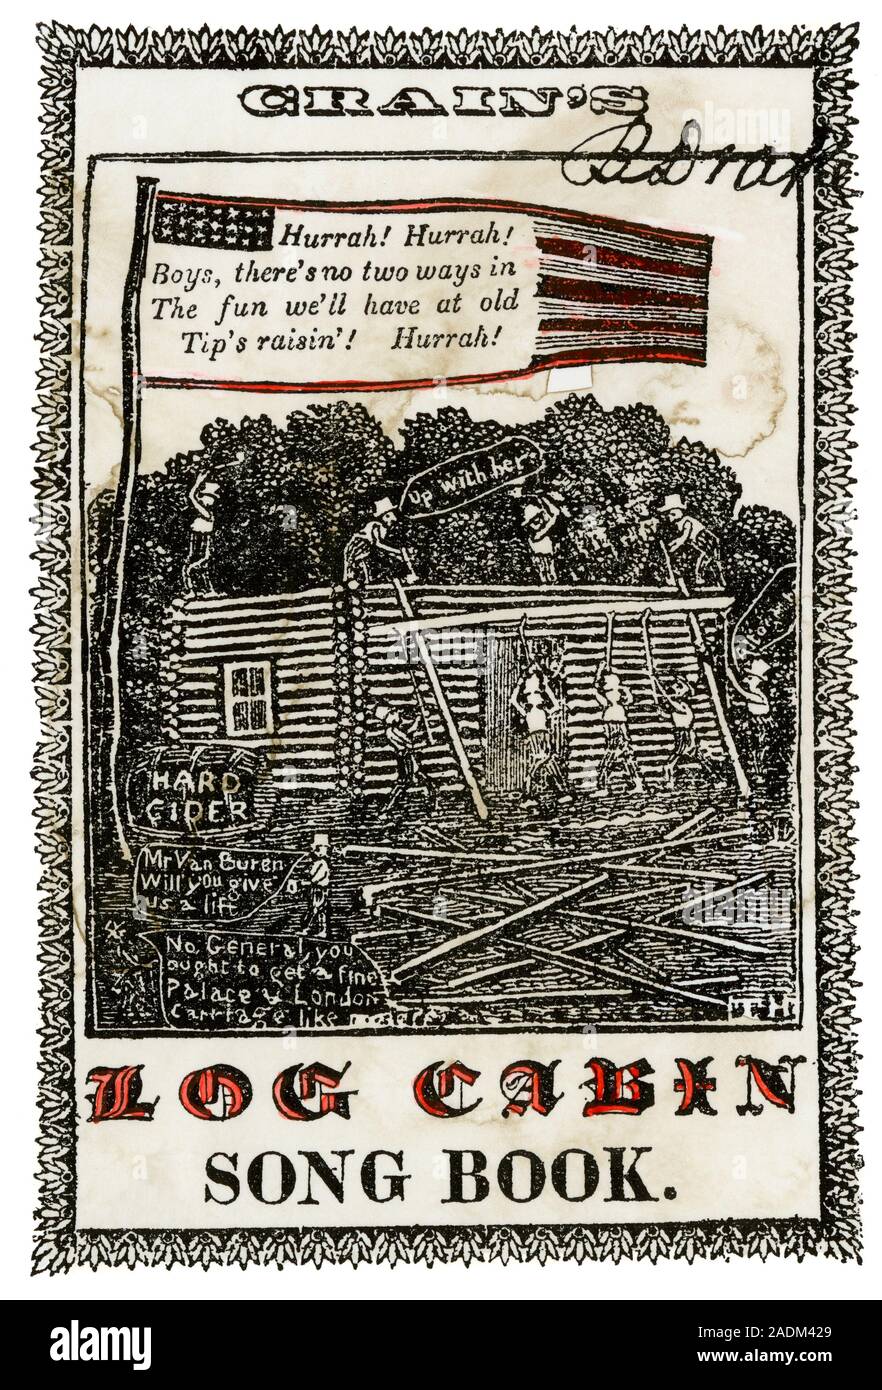 Coperchio del song book utilizzato in William Henry Harrison della campagna presidenziale 1840. Colorate a mano la xilografia Foto Stock